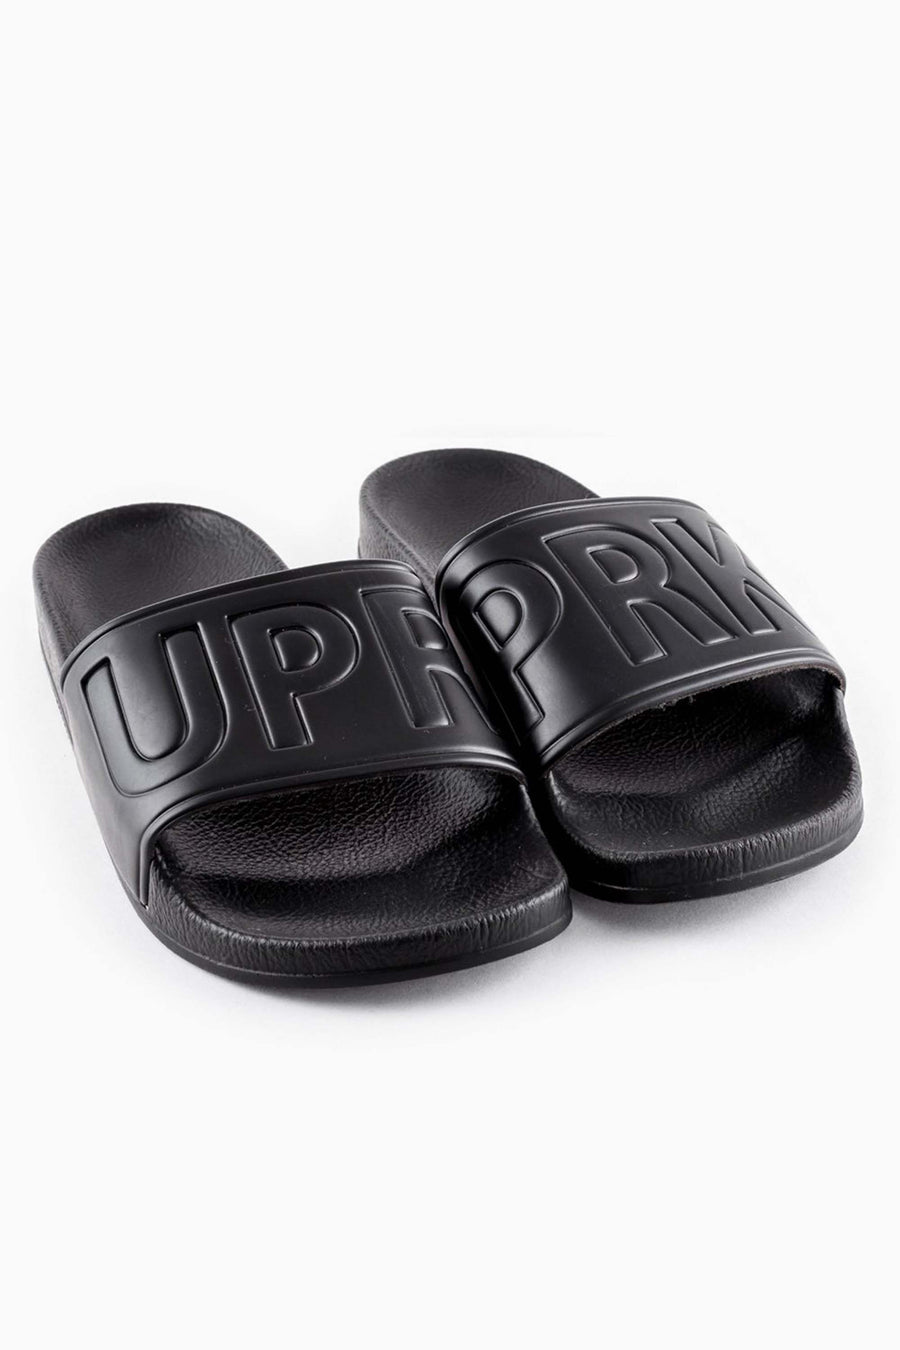 UPR PRK Slides - Black